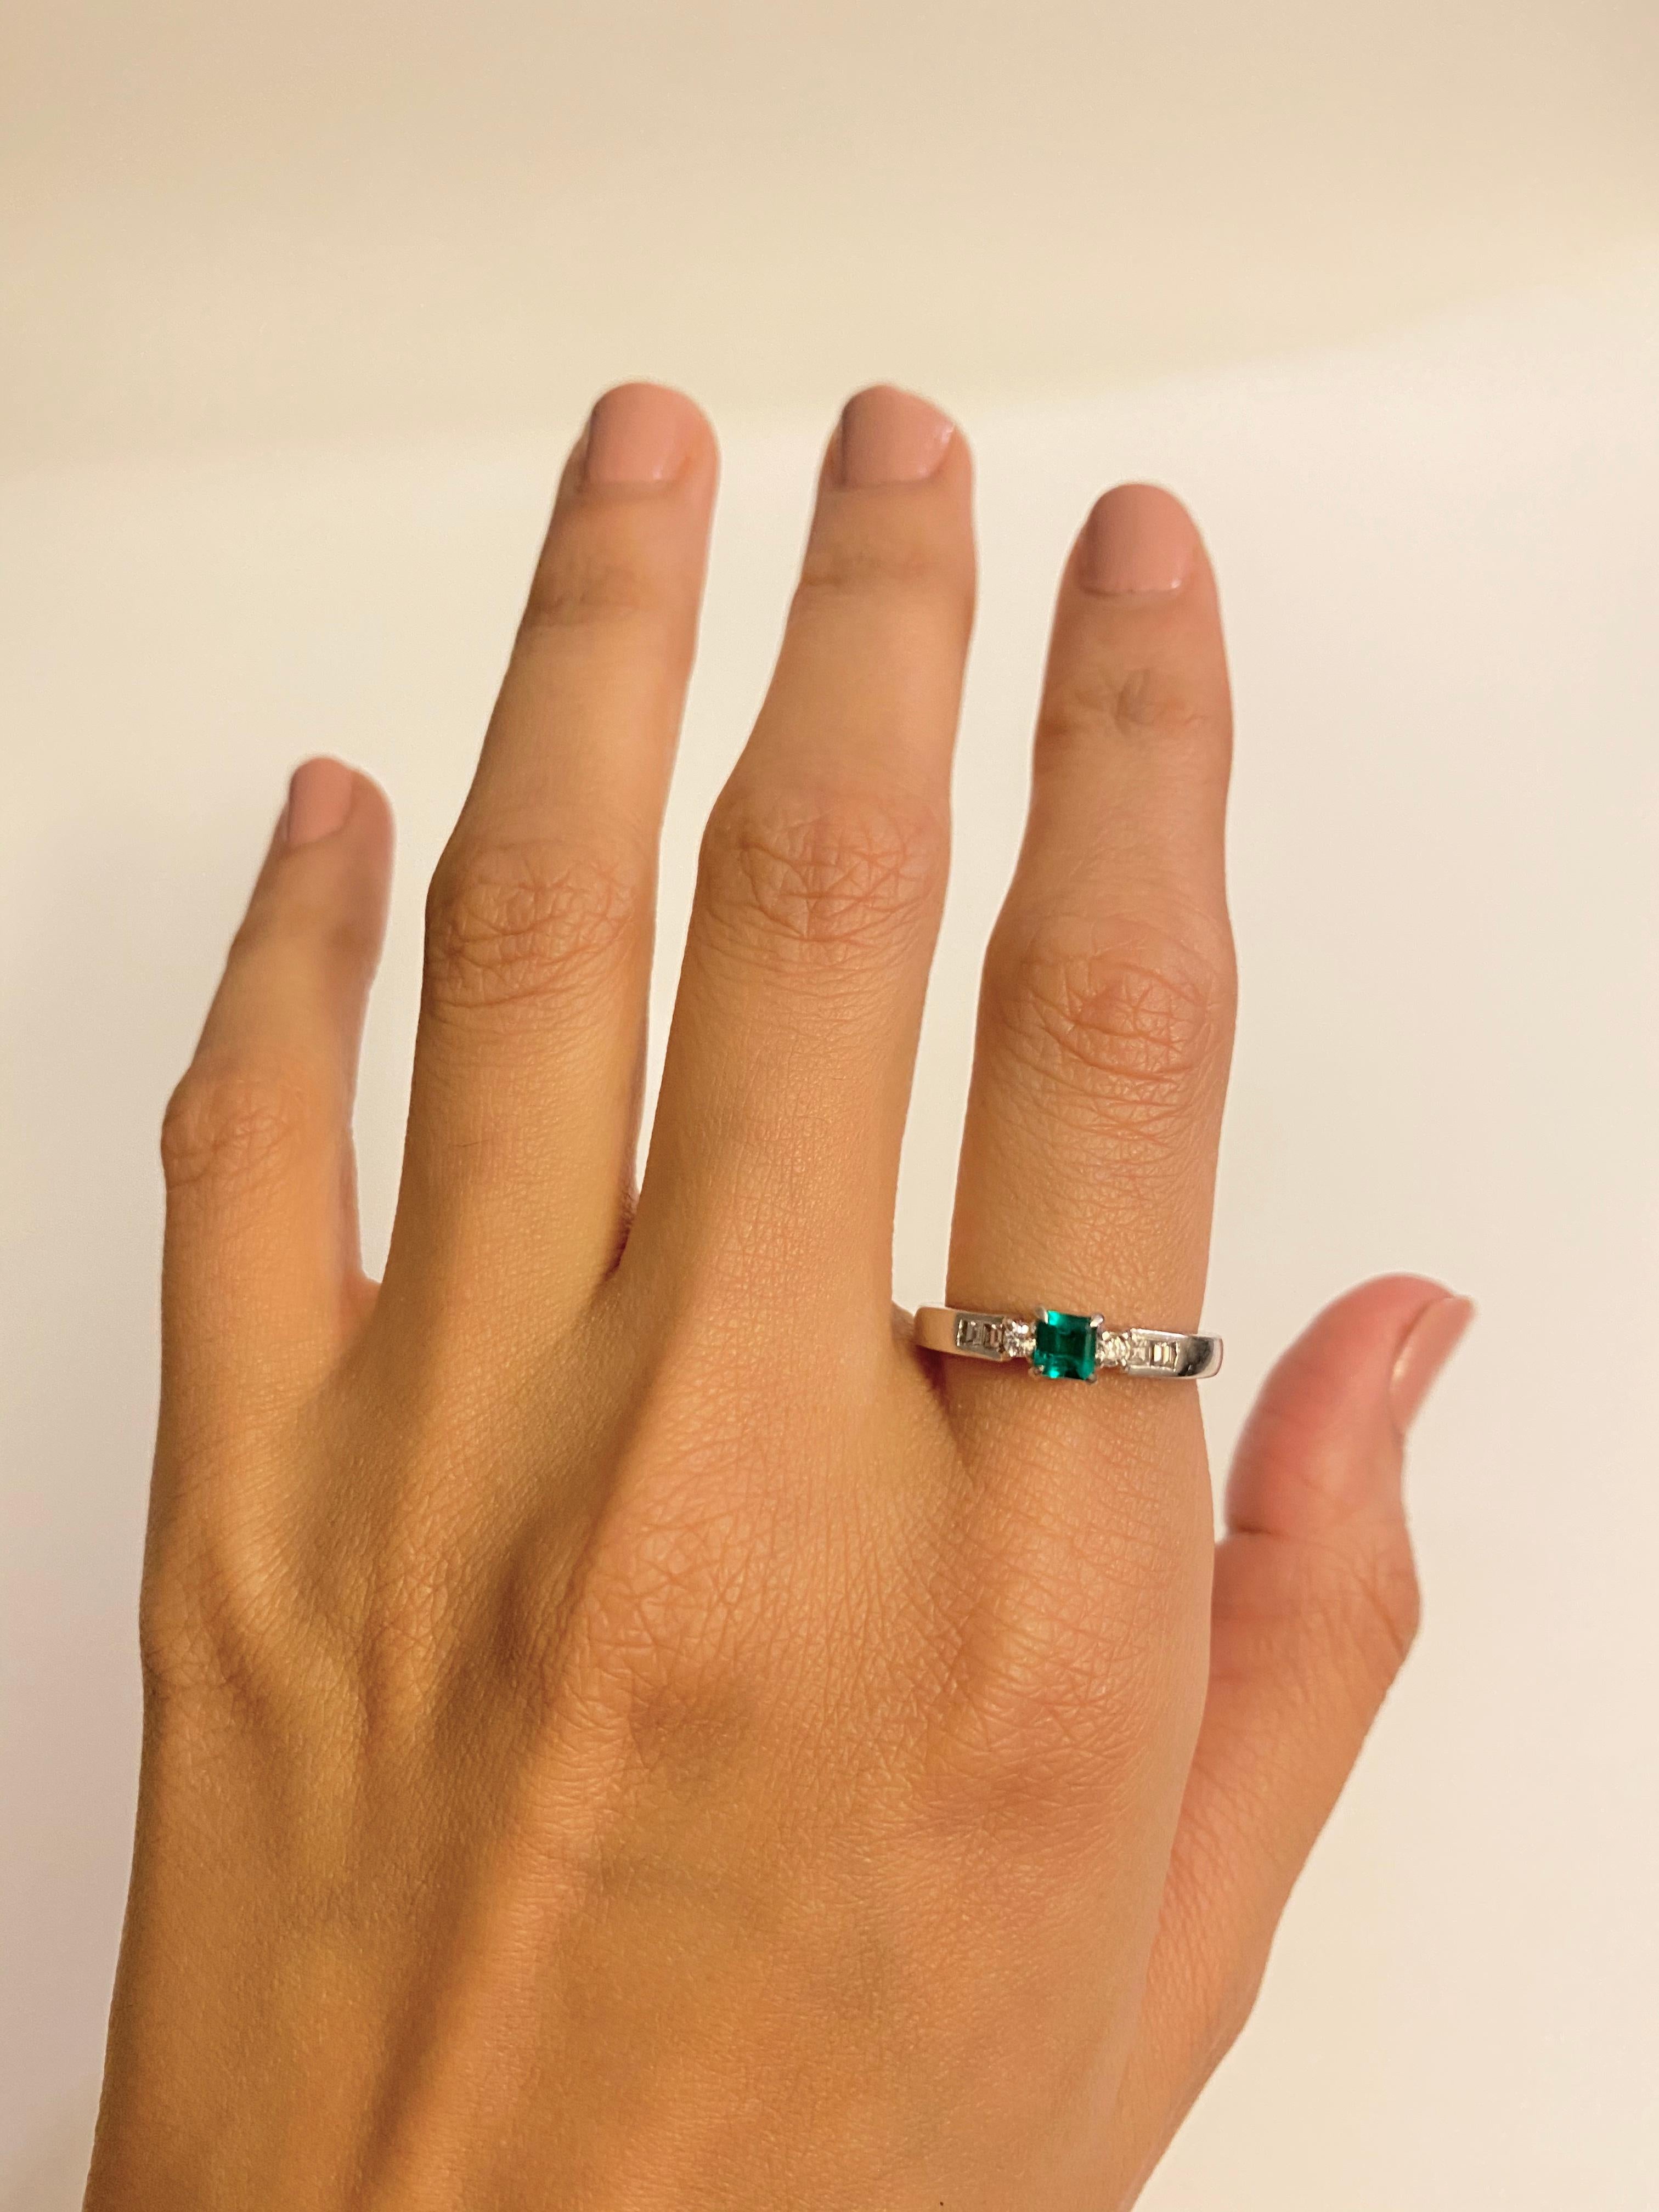 Unser exquisiter Ring aus Platin mit natürlichem kolumbianischem Smaragd und Diamanten im Vintage-Stil ist eine wahre Verkörperung klassischer Eleganz und der seltenen Schönheit kolumbianischer Smaragde. Dieses Vintage-Stück zeugt von der zeitlosen